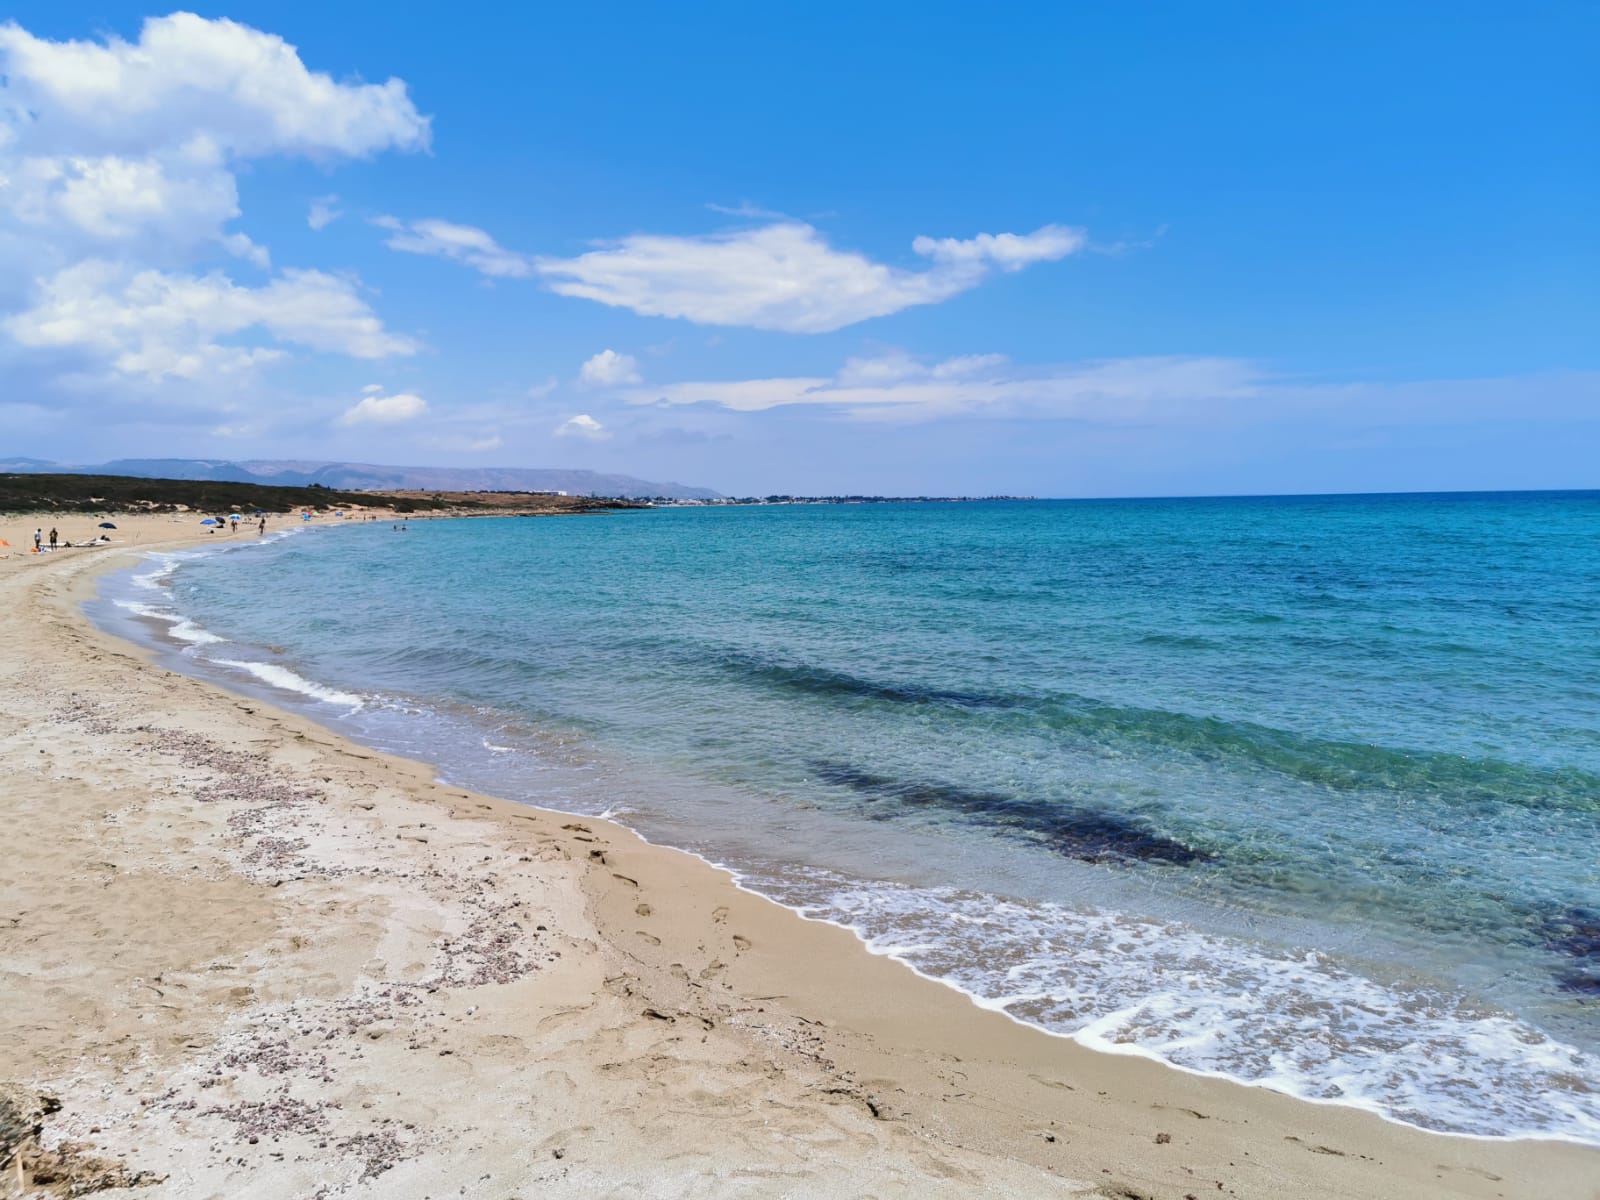 spiaggia e mare azzurro trasparente della sicilia